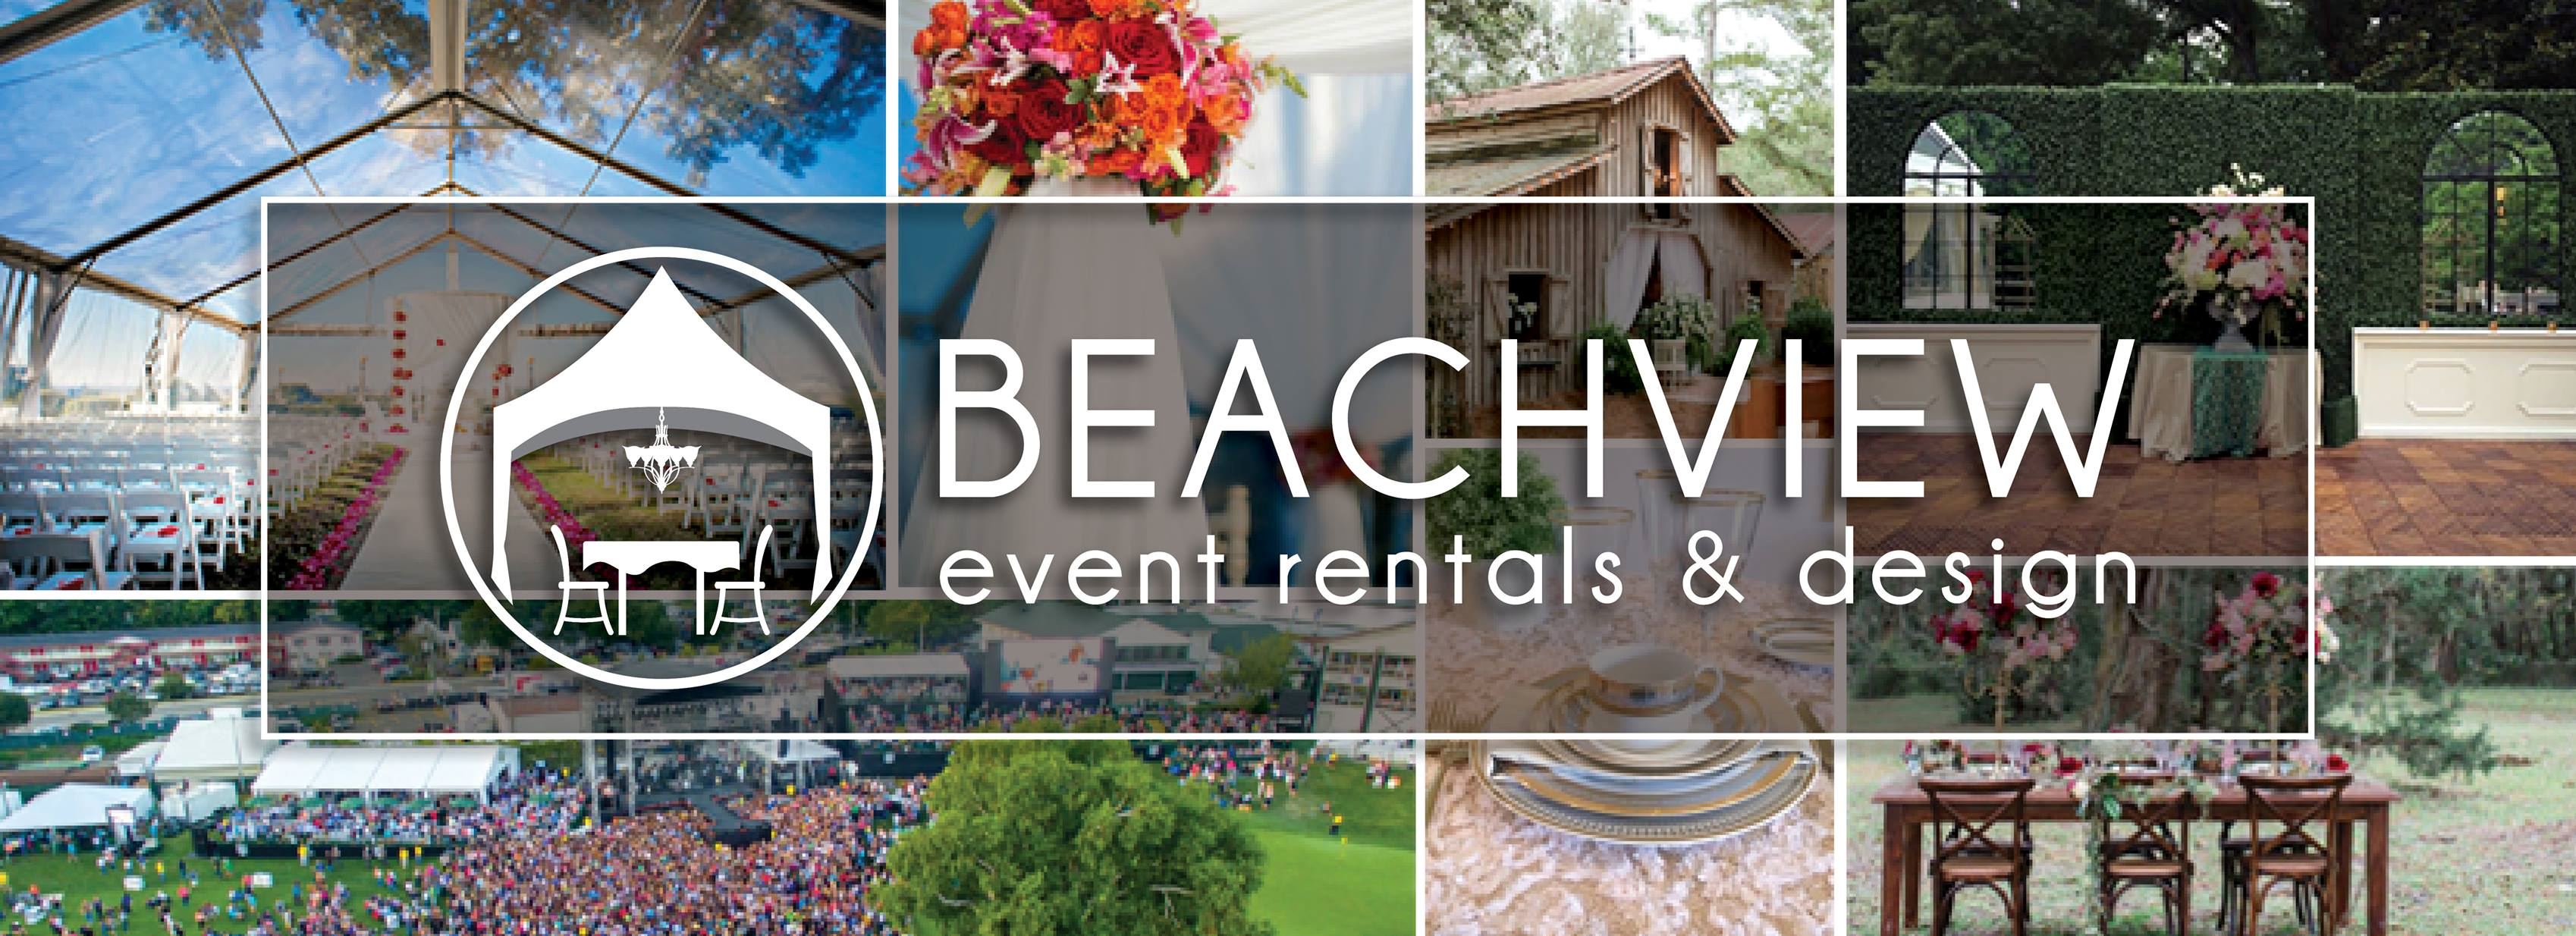 Beachview Event Rentals & Design St. Simons Island - 1